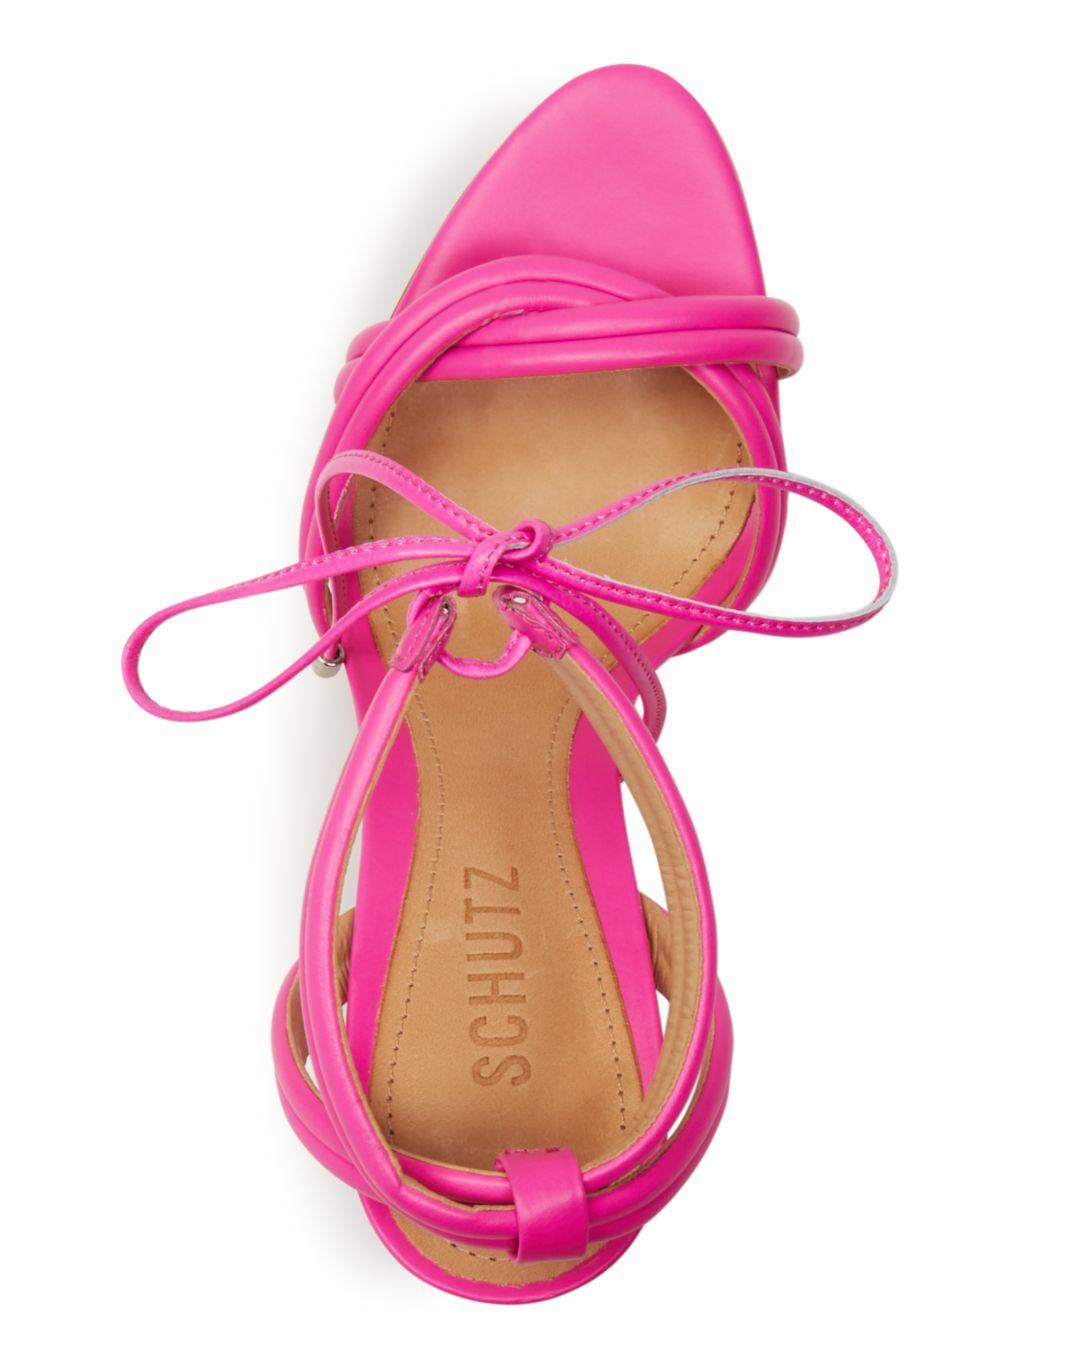 Schutz Women's Yvi Strappy High - Heel Sandals in Pink | Lyst